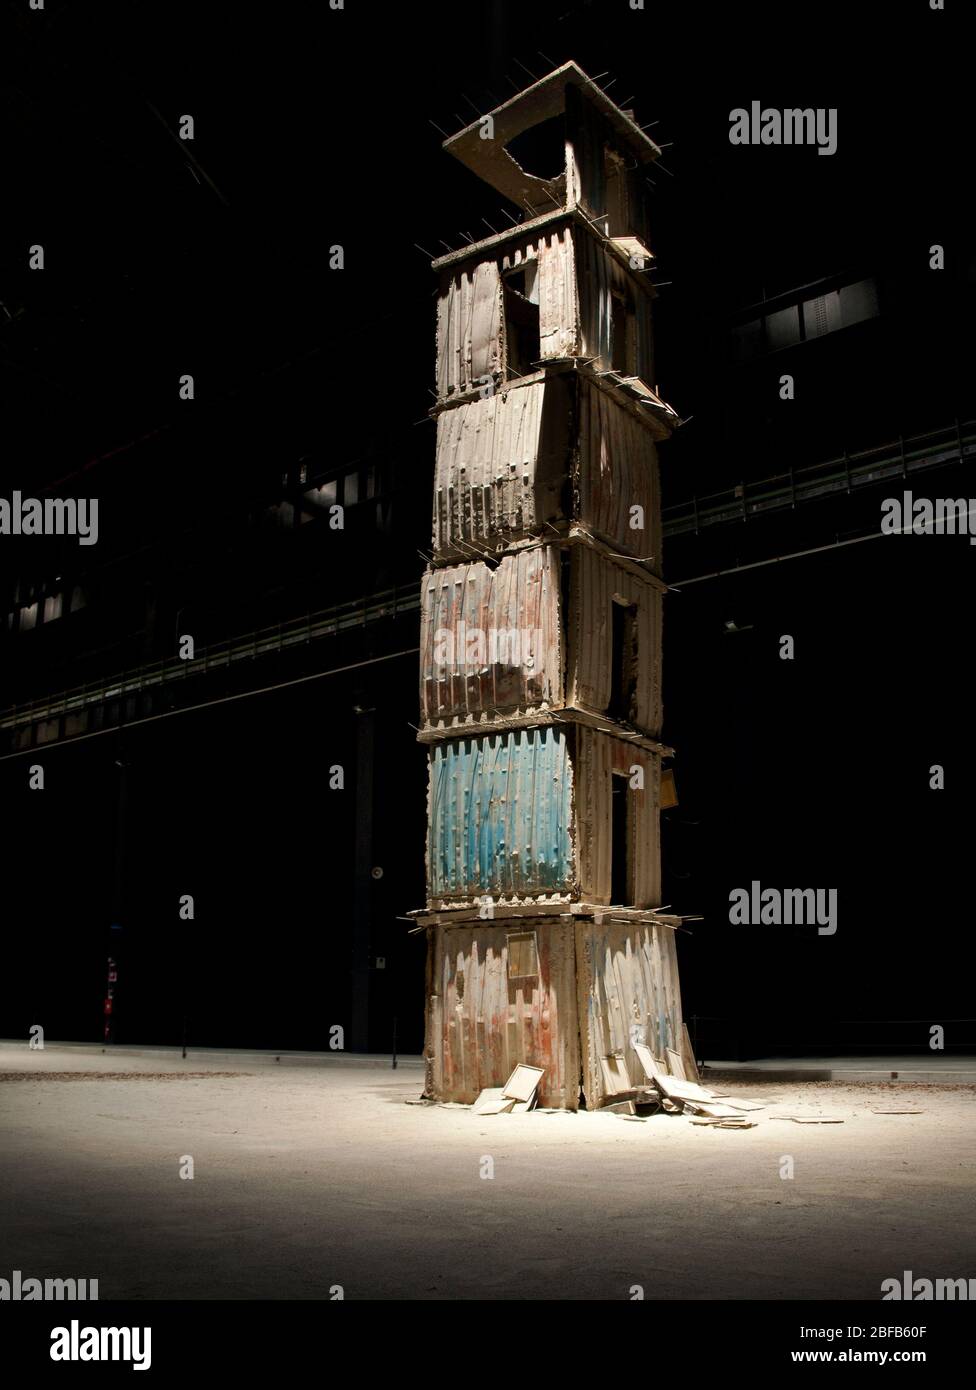 I sette palazzi celesti, un'installazione specifica per sito presso l'Hangar Bicocca di Milano, una delle opere più importanti dell'artista Anselm Kiefer Foto Stock